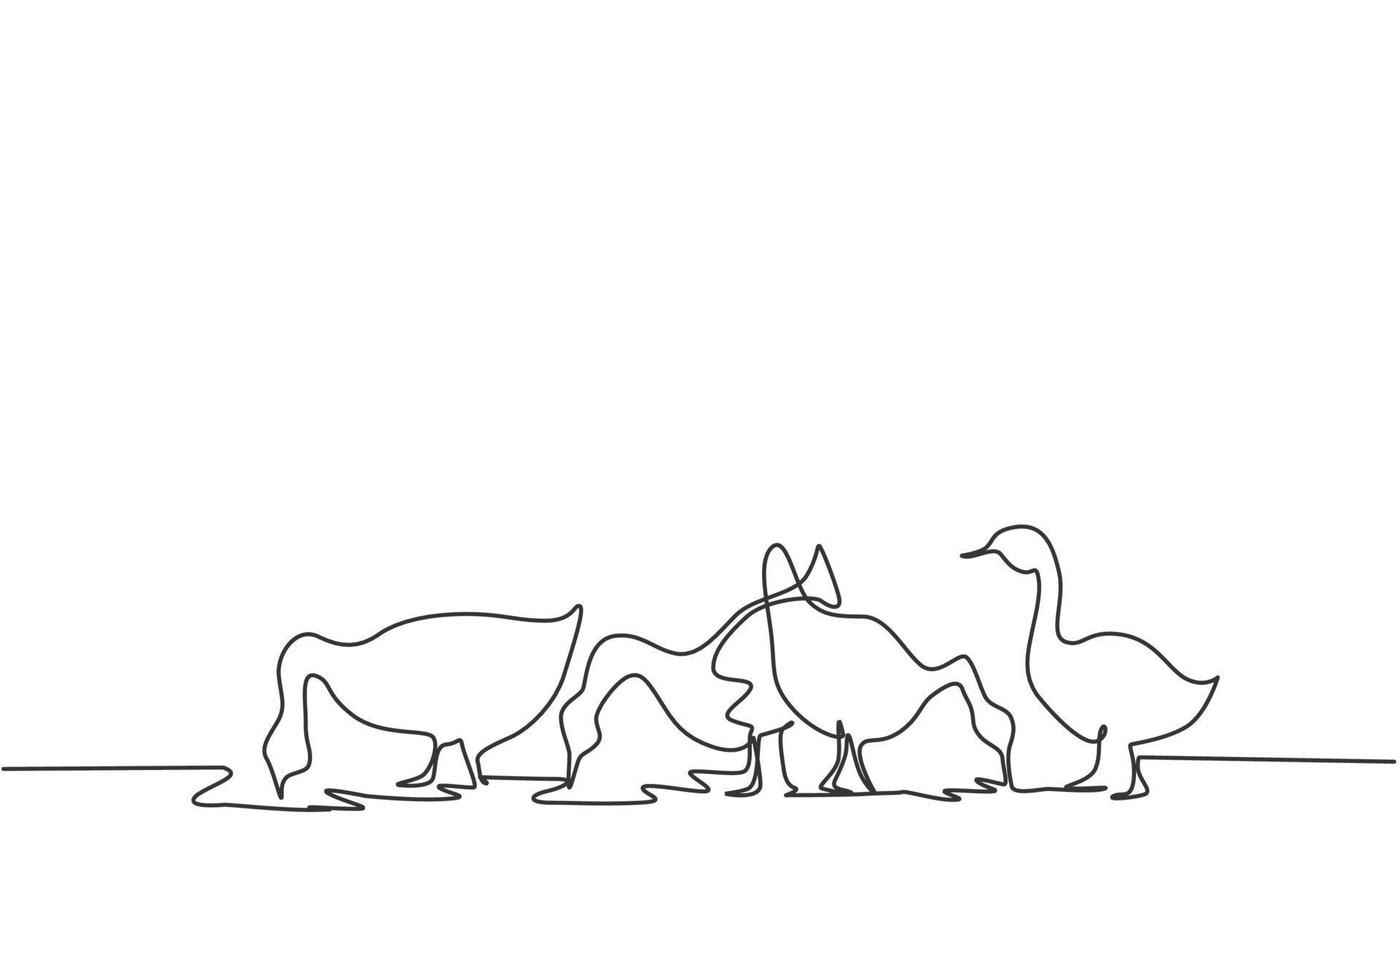 Un solo dibujo de una línea de los gansos se alimentan para estar sanos y producir los mejores huevos y carne. concepto mínimo de desafío agrícola. Ilustración de vector gráfico de diseño de dibujo de línea continua moderna.